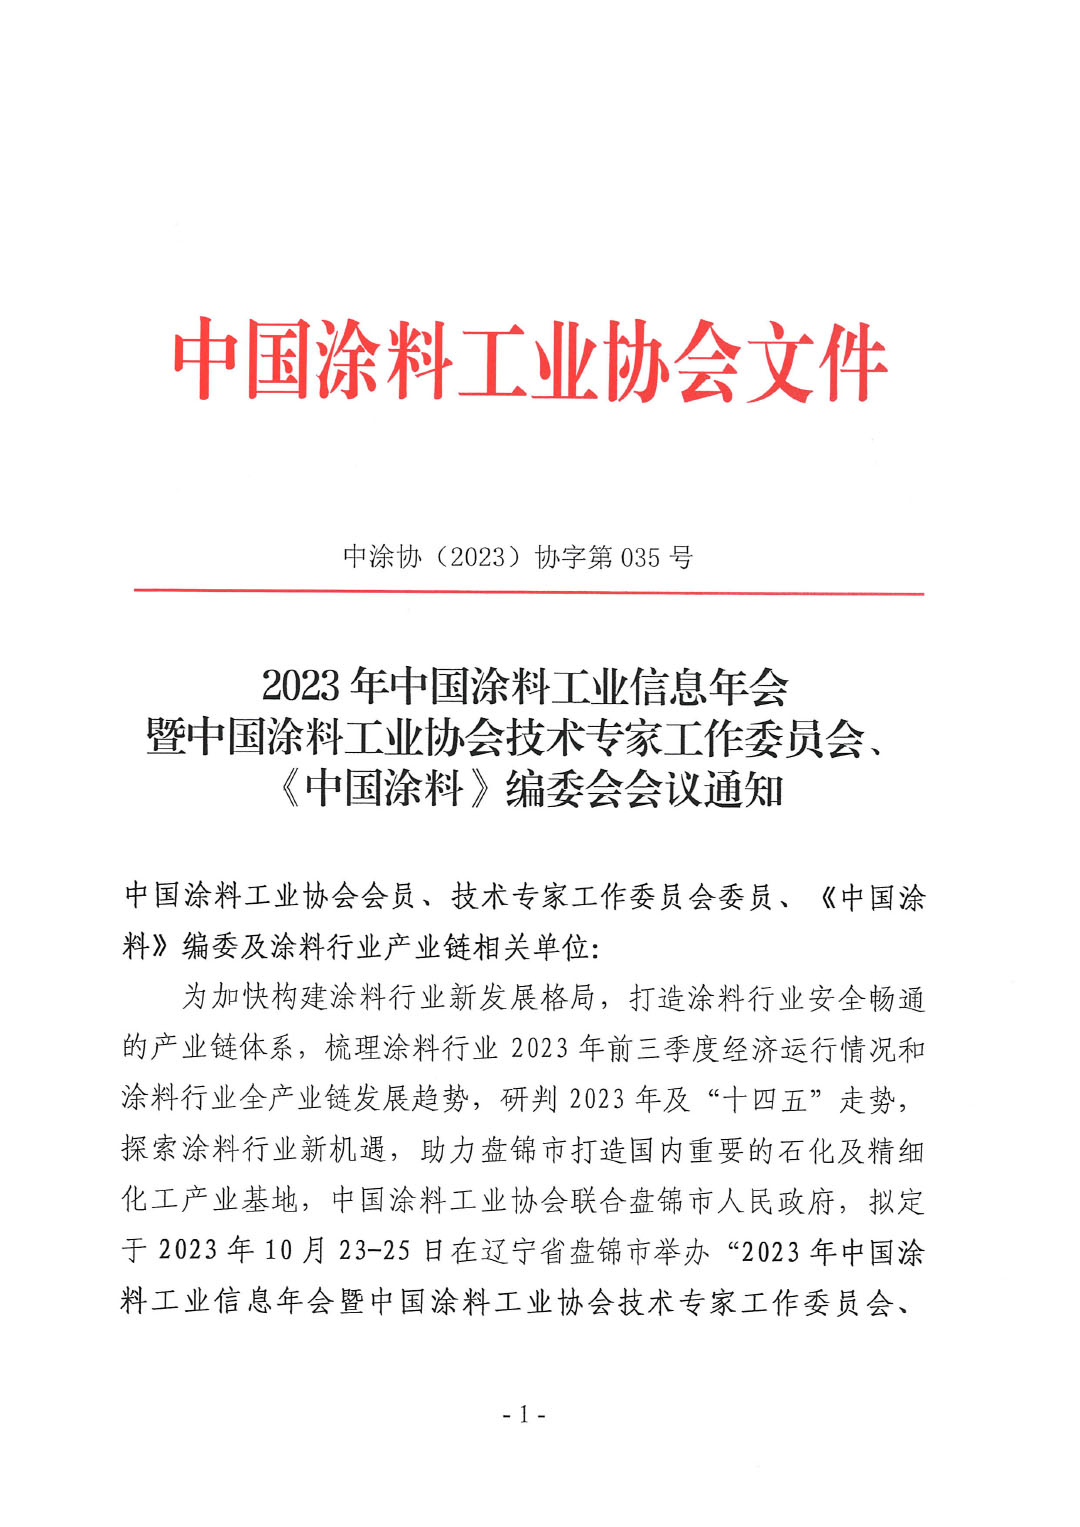 2023年中国涂料工业信息年会通知（发文版）0921-1